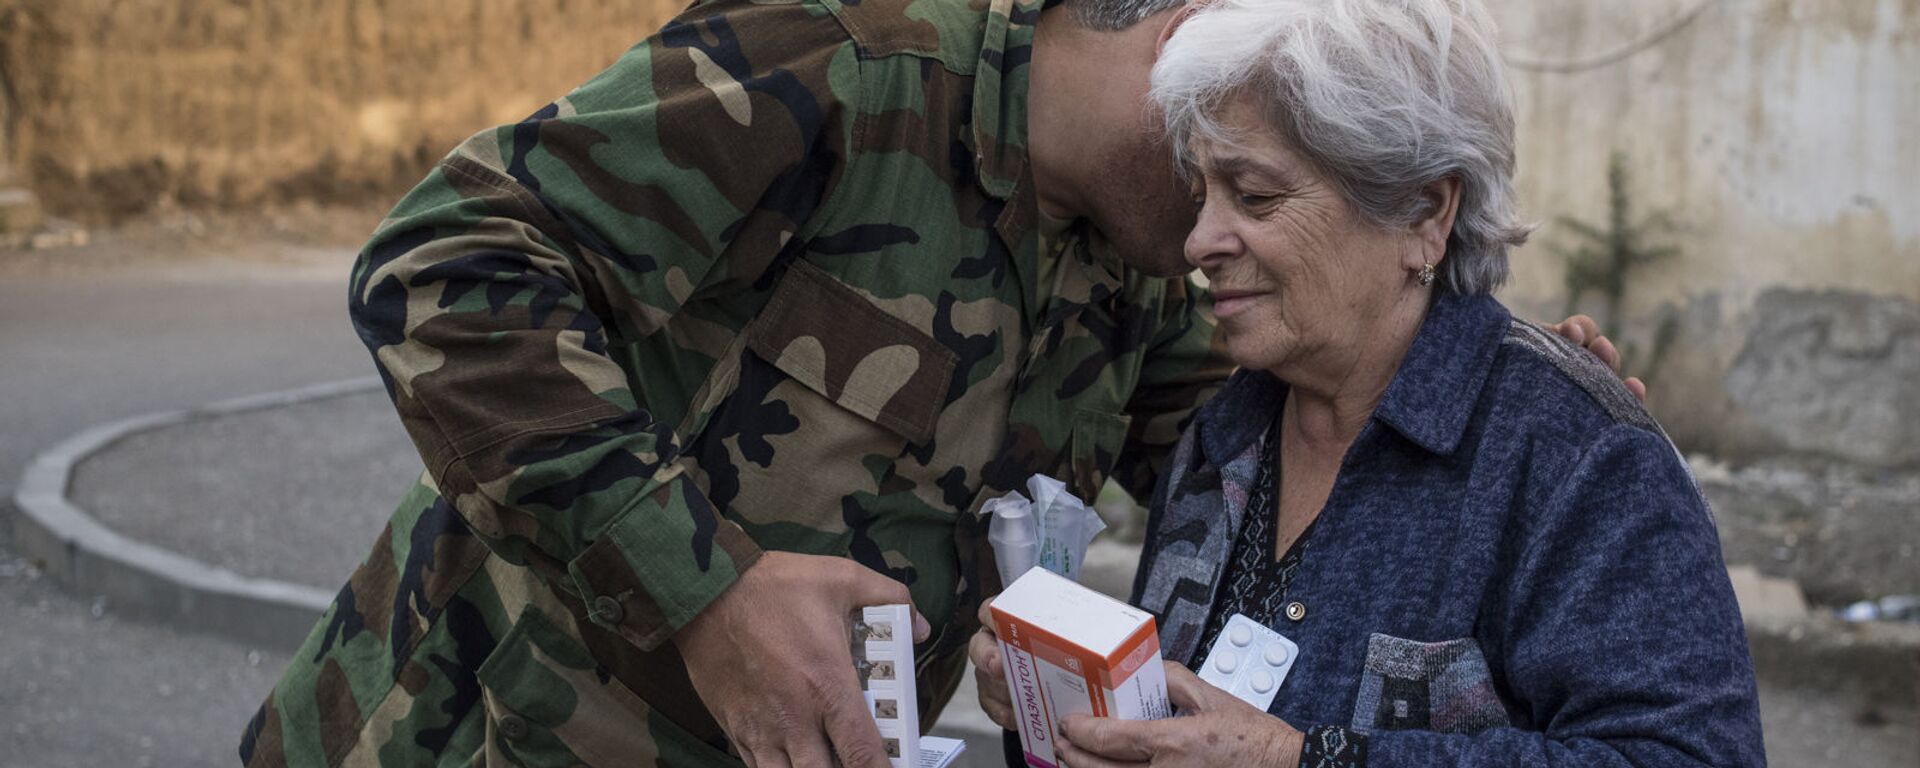 Волонтер в форме передает лекарства пожилой женщине в Степанакерте (16 октября 2020). Карабах - Sputnik Армения, 1920, 11.09.2021